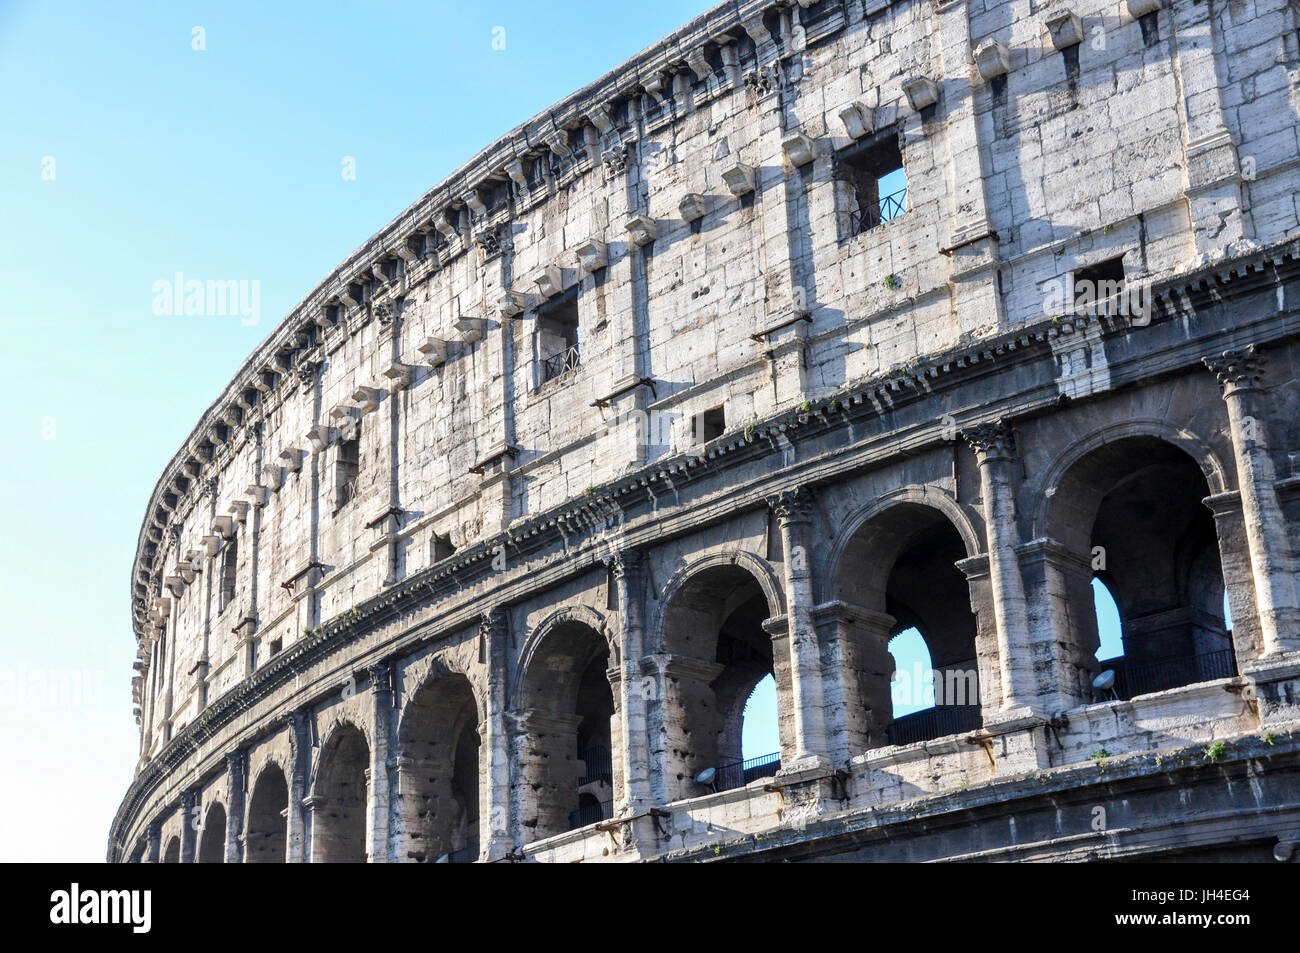 External facade of the Colosseum, Rome, Italy. Stock Photo